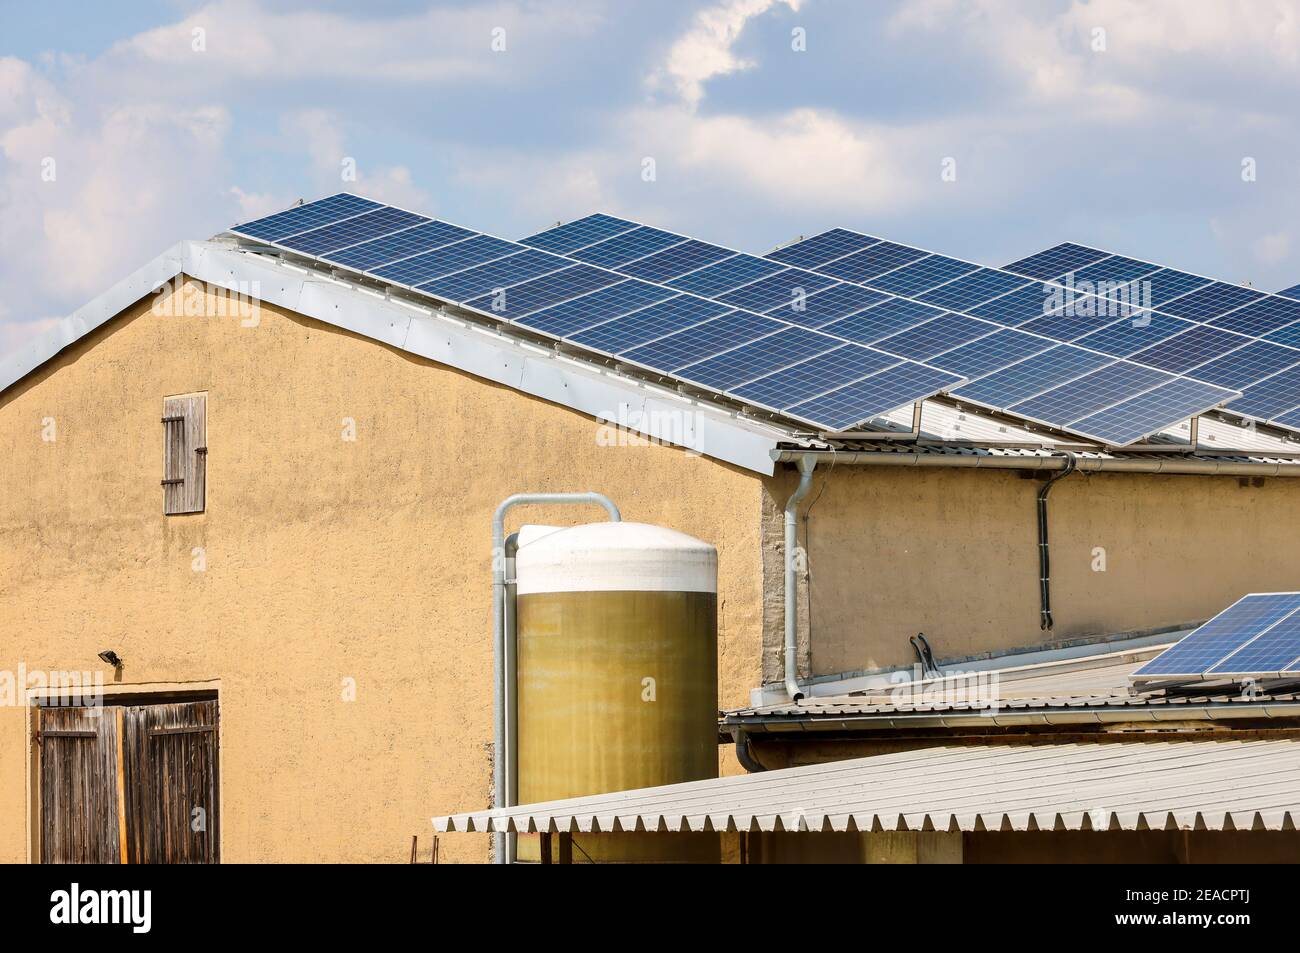 Wittichenau, Oberlausitz, Sachsen, Deutschland - Solaranlage auf dem Dach der Viehställe, ehemaliges LPG-Gebäude, Hof Domanja. Stockfoto